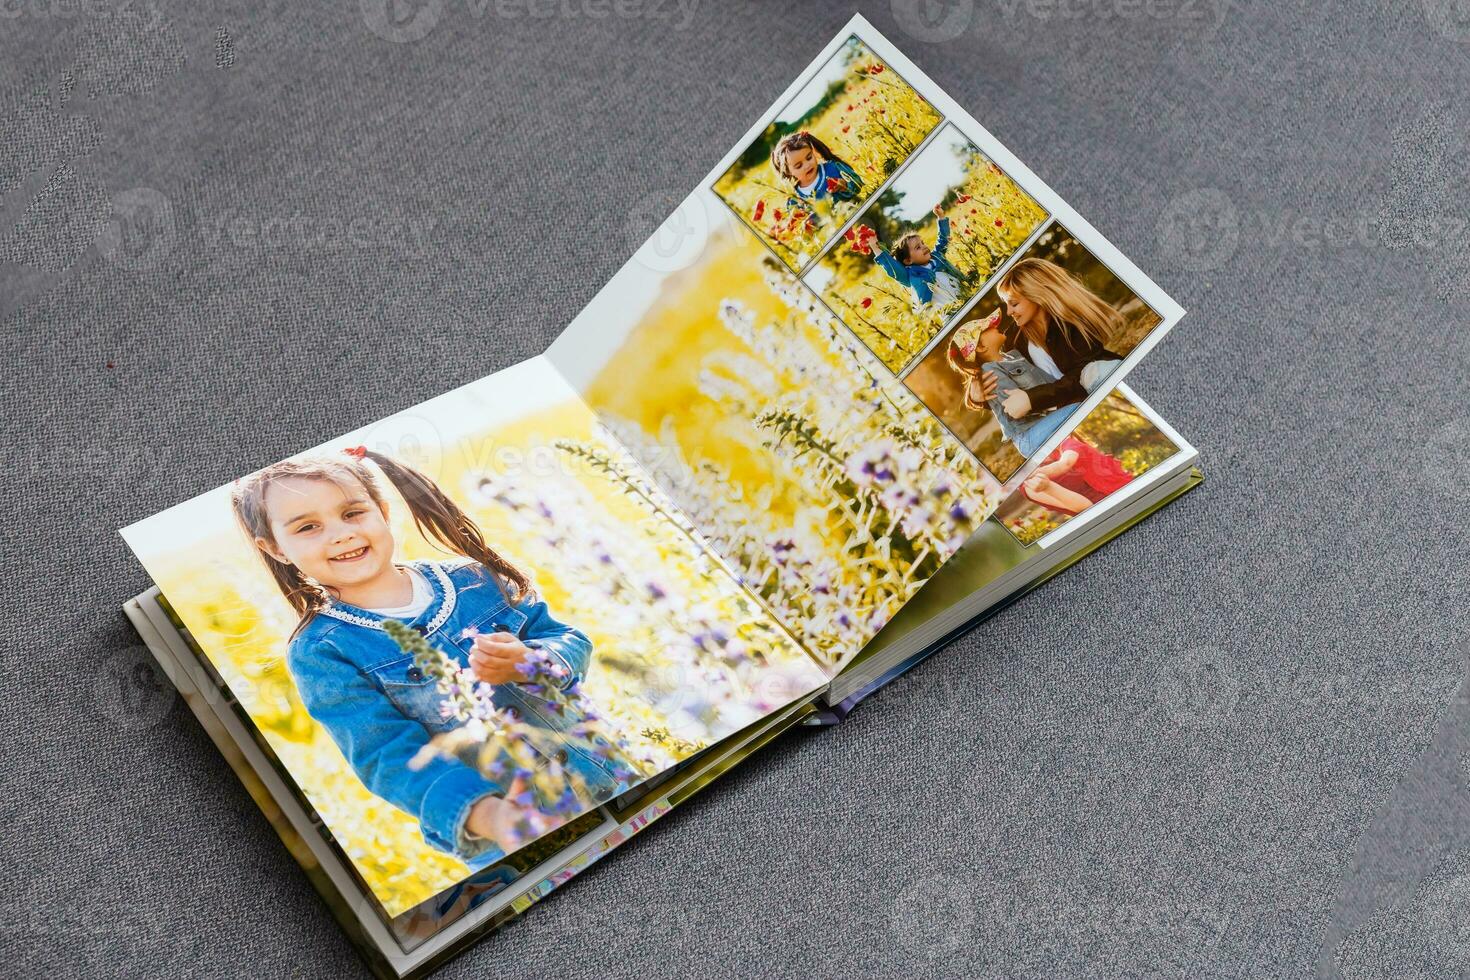 Kinder- Foto Buch. Kinder- emotional Porträt.